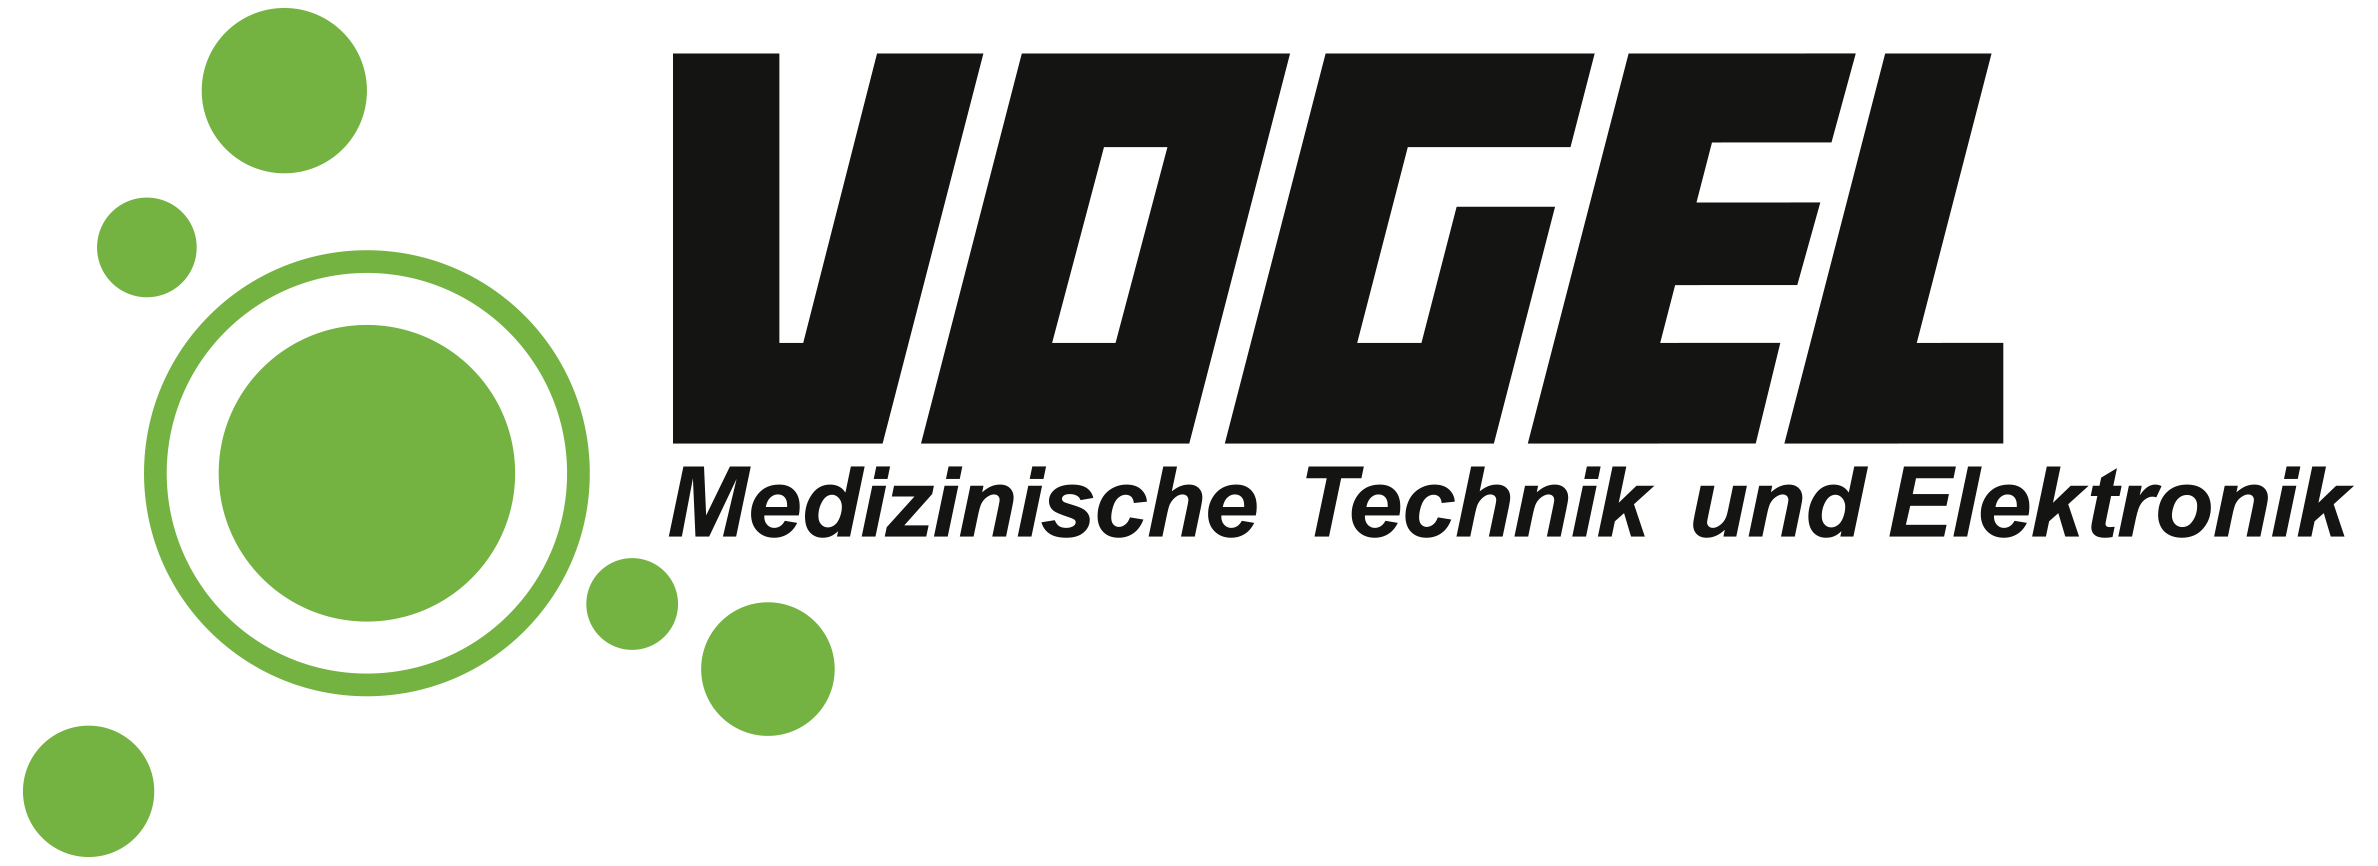 VOGEL Medizinische Technik und Elektronik GmbH & Co. KG